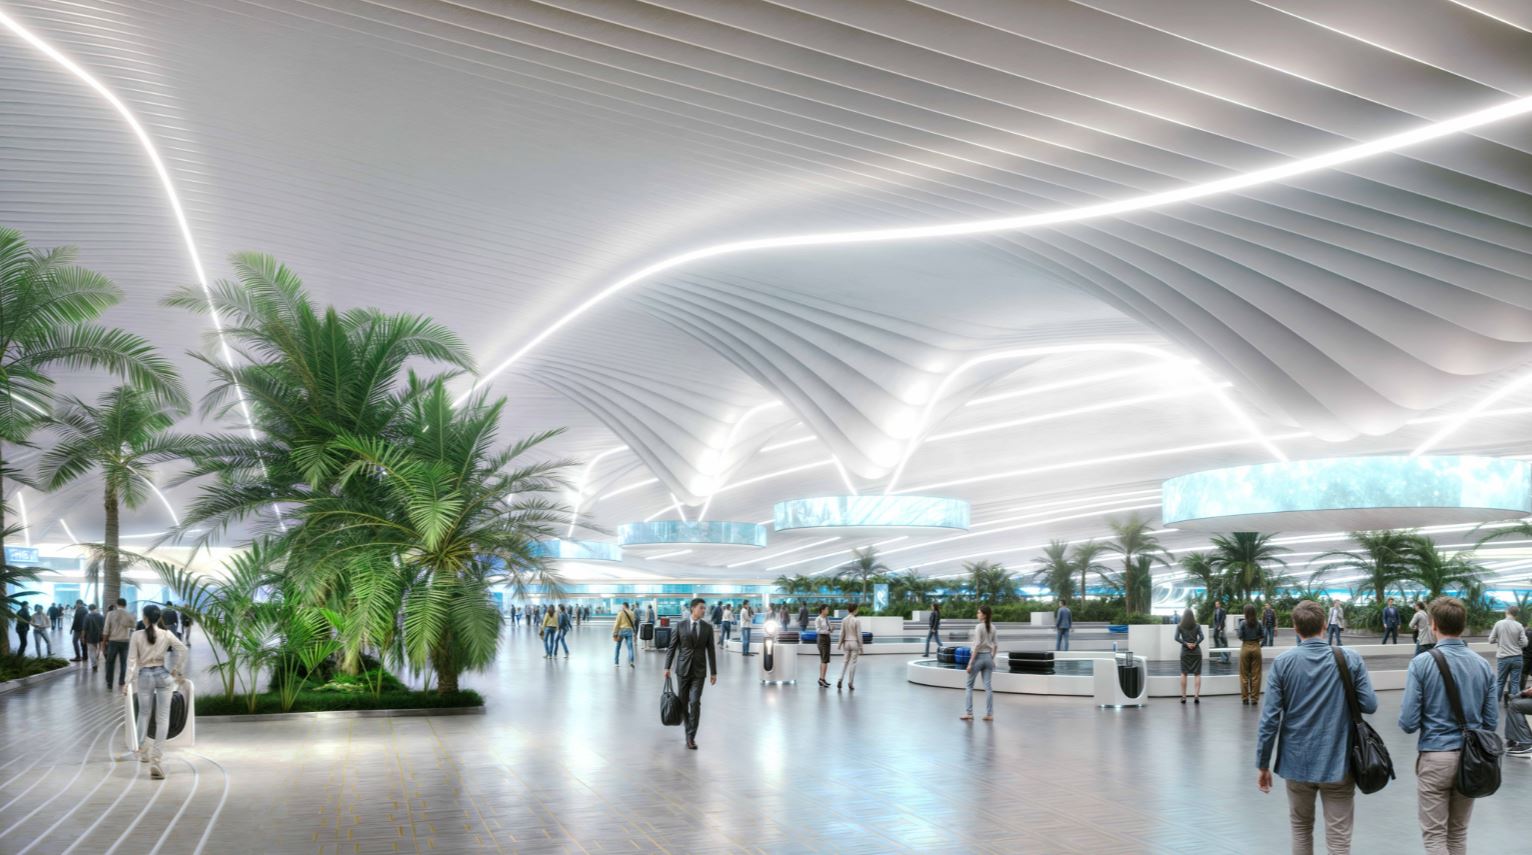 "هيئة الطيران المدني" : الإعلان عن توسعة مطار آل مكتوم يعكس النظرة المستقبلية للقيادة